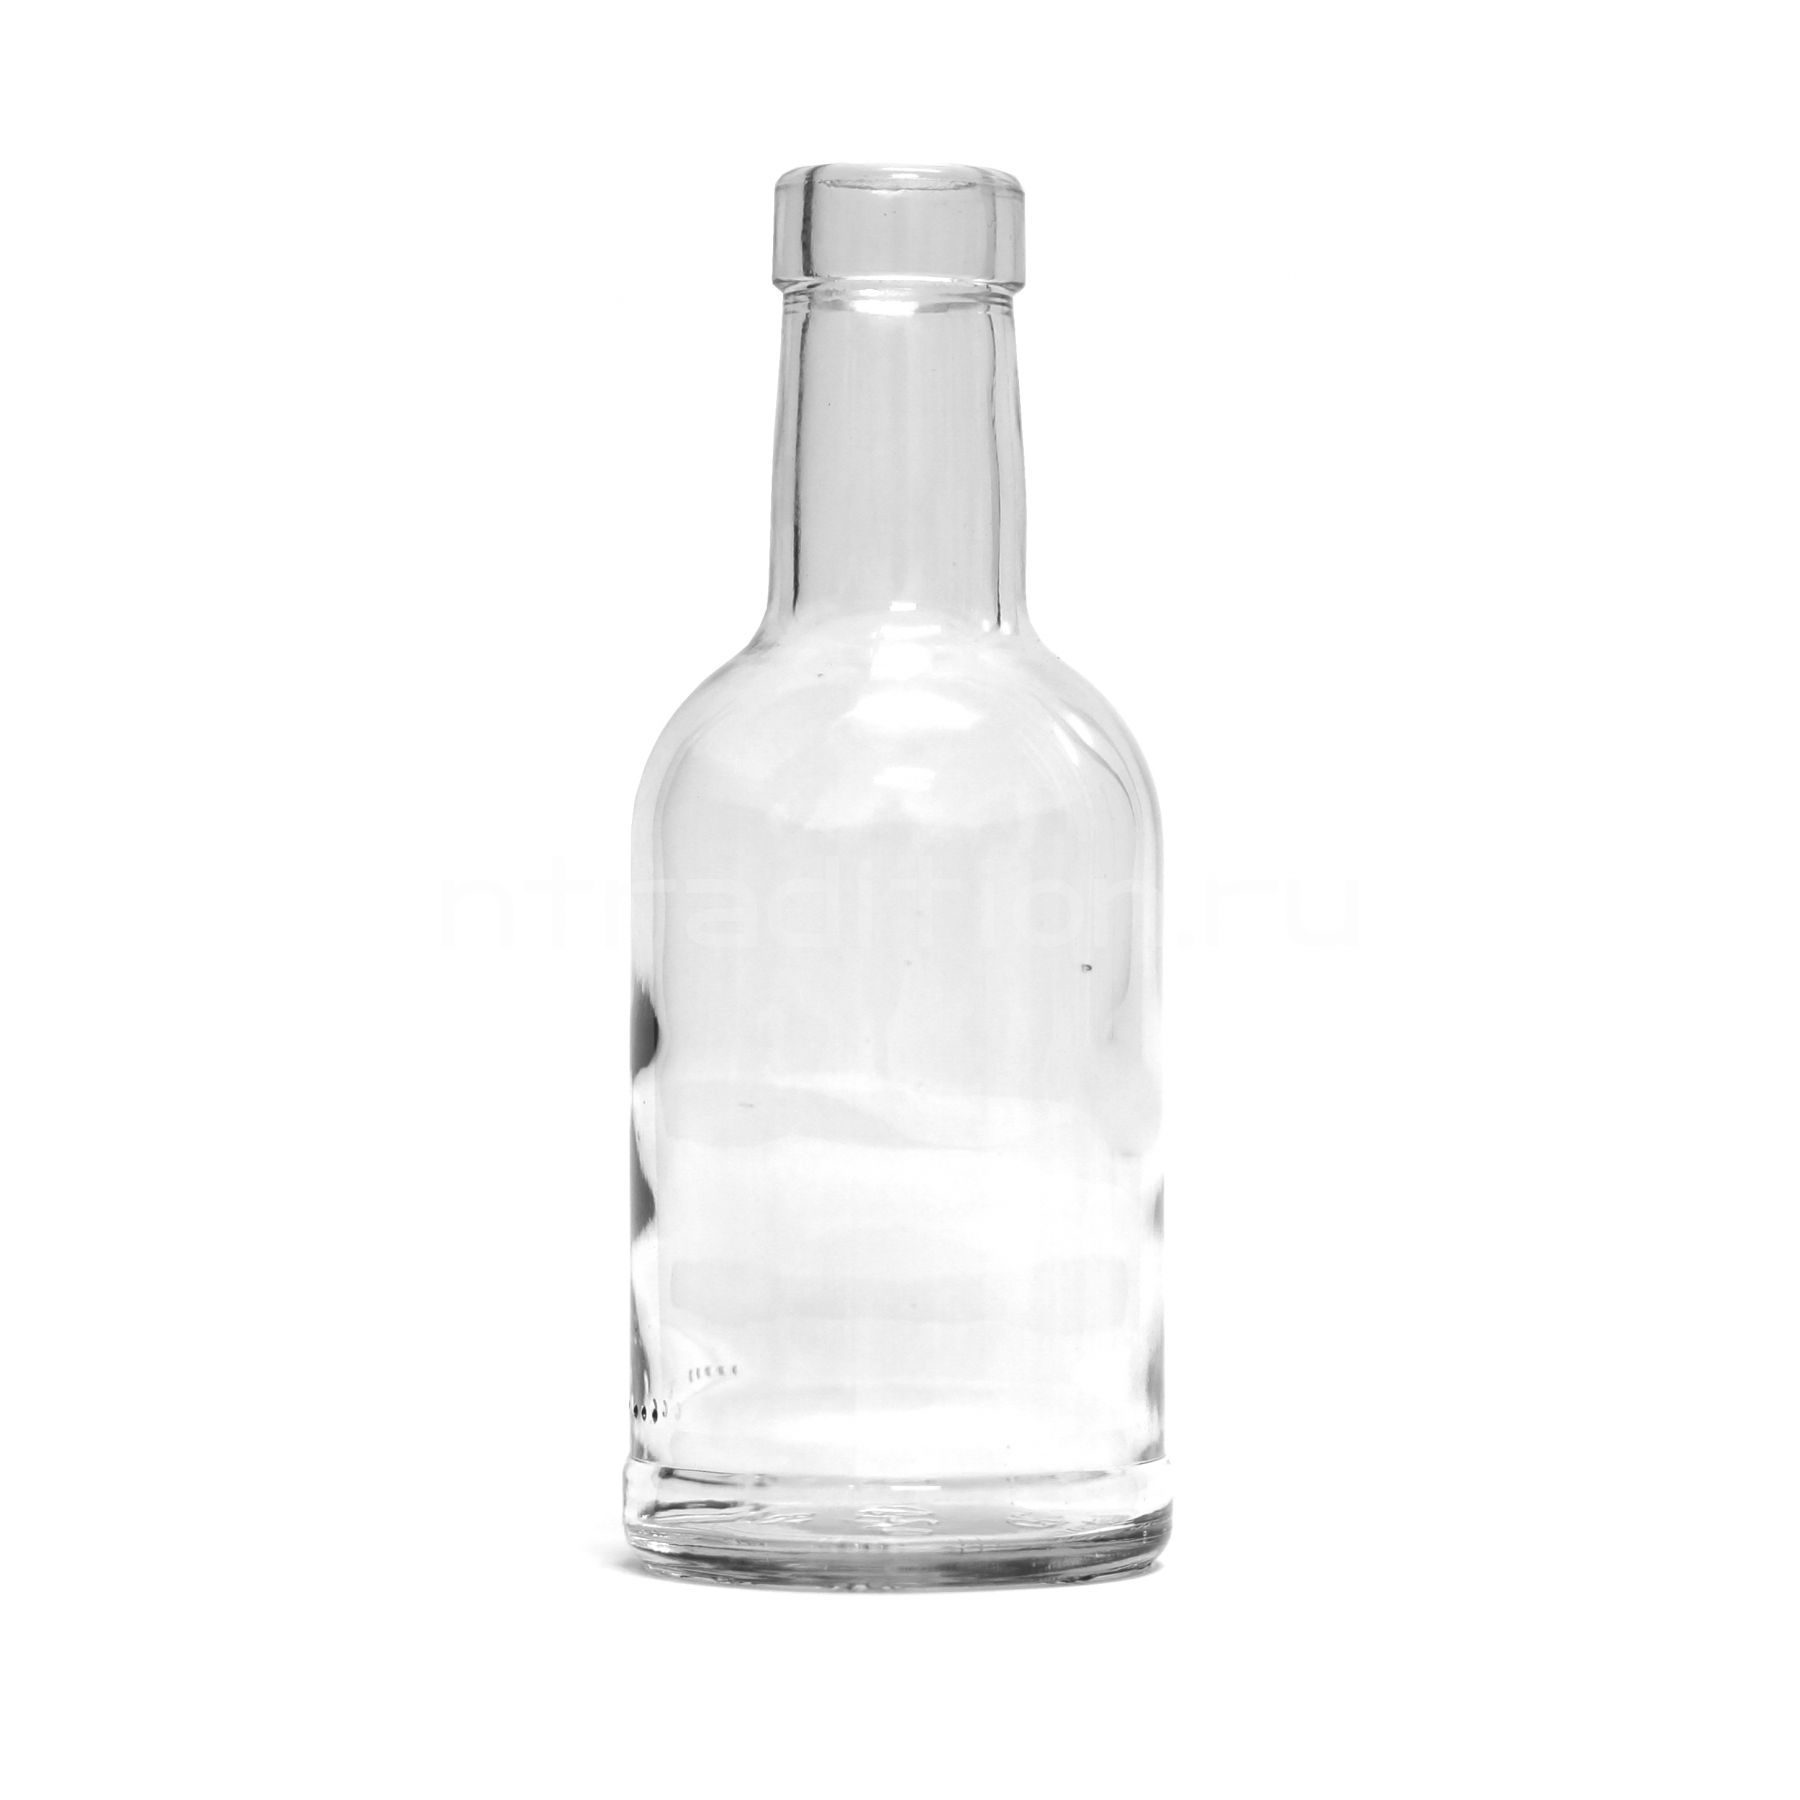 Стеклянные бутылки для самогона. Бутылка домашний самогон 0,2 л. Бутылка домашний самогон 0,5 л. Бутылка для самогона 0,25л. Бутылка домашний самогон 1 л..